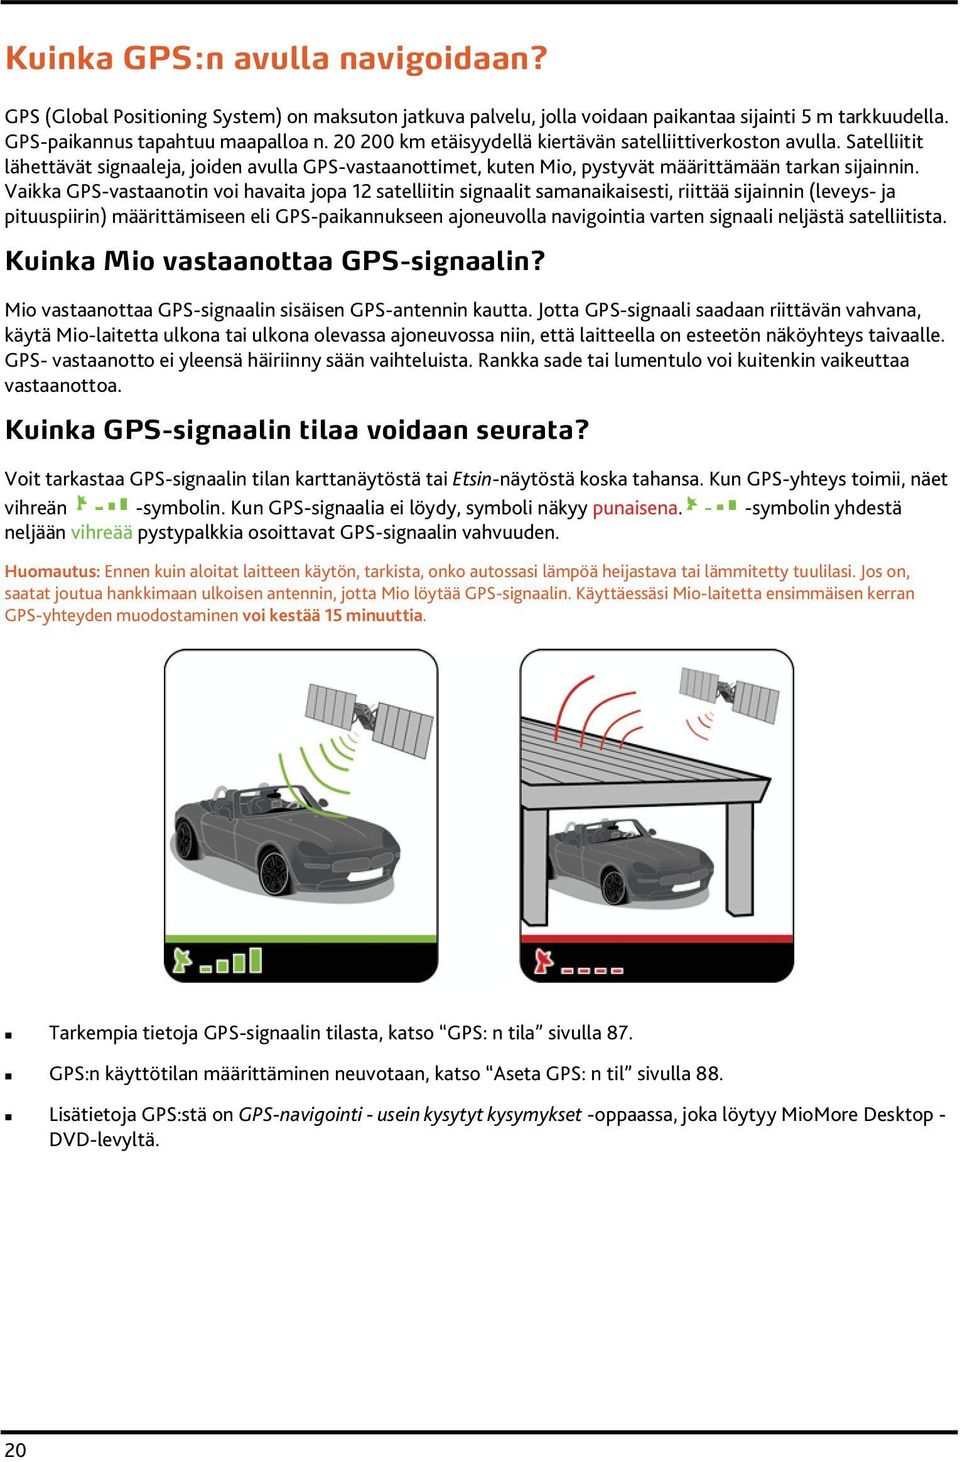 Vaikka GPS-vastaanotin voi havaita jopa 12 satelliitin signaalit samanaikaisesti, riittää sijainnin (leveys- ja pituuspiirin) määrittämiseen eli GPS-paikannukseen ajoneuvolla navigointia varten